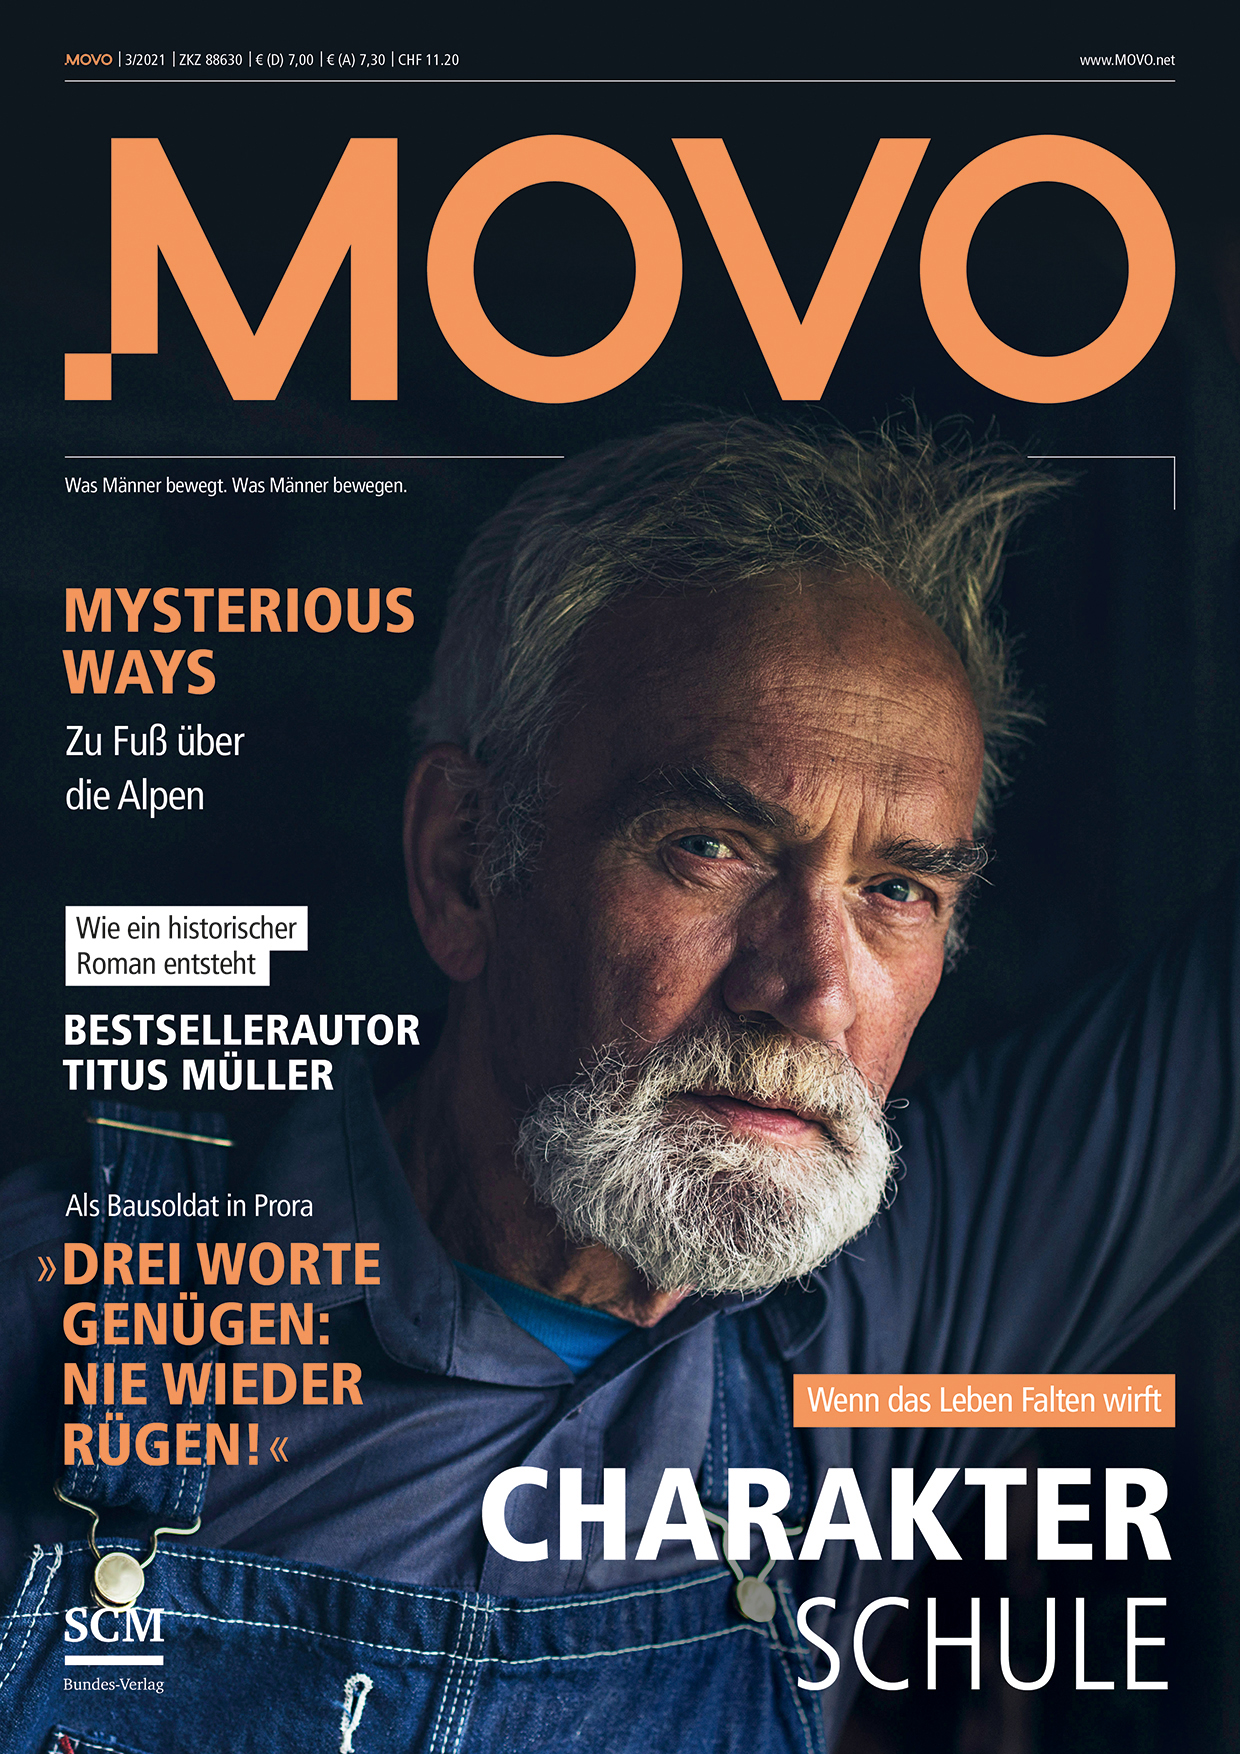 Titelbild Magazin MOVO